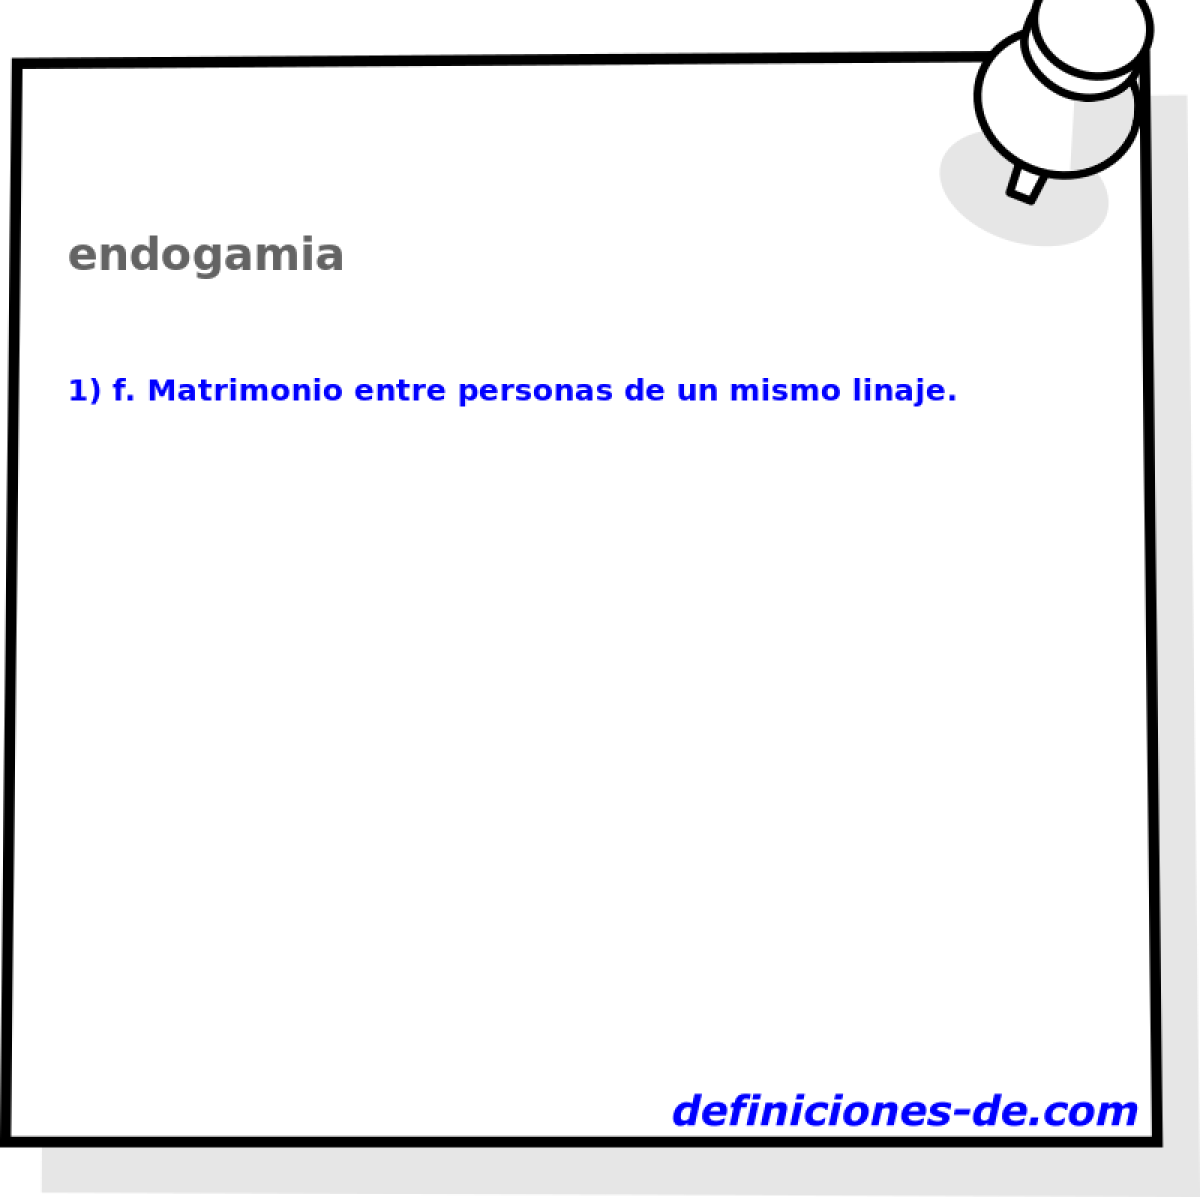 endogamia 